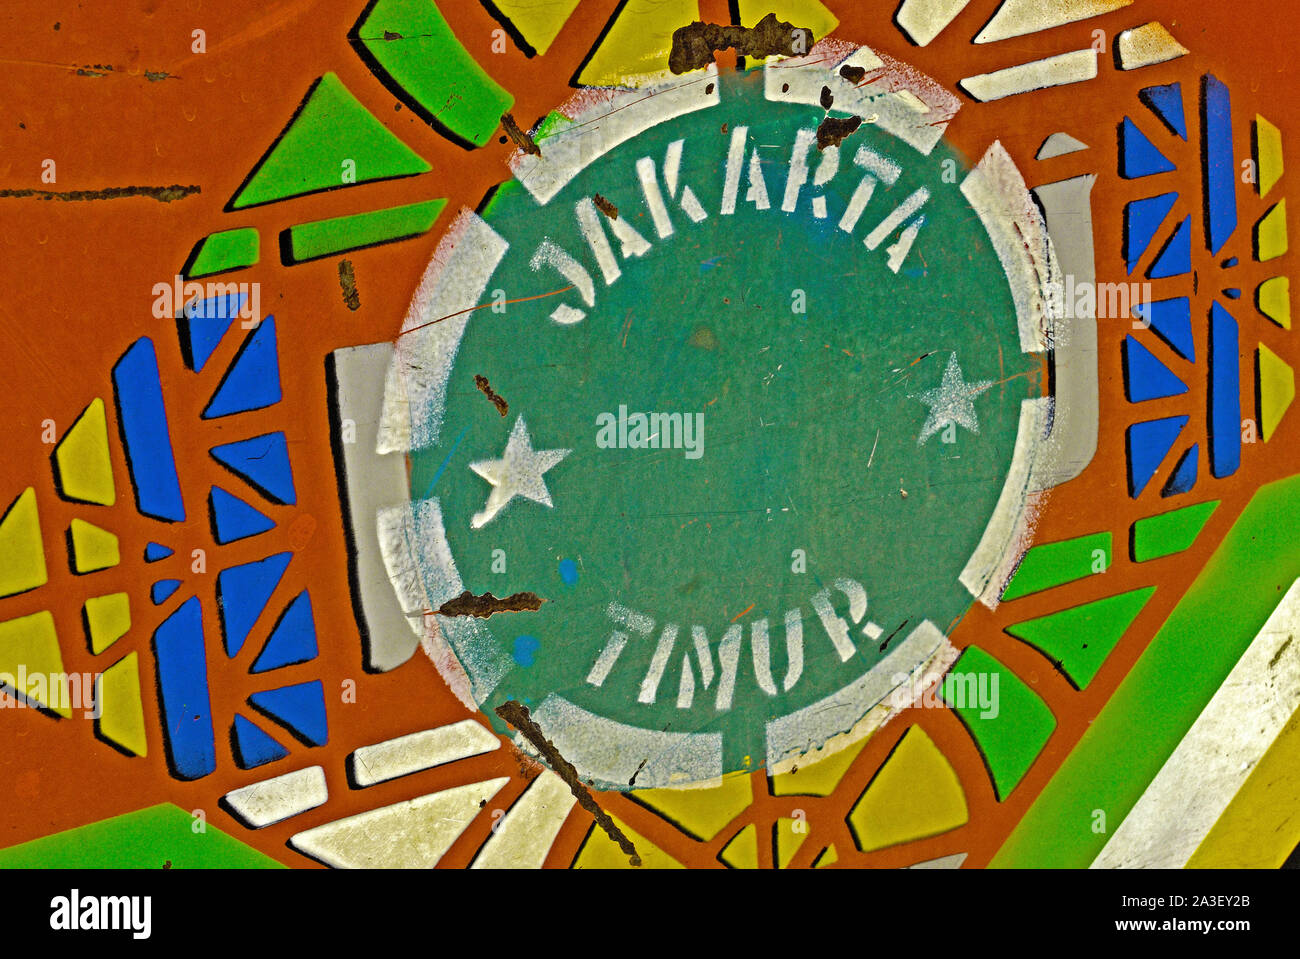 Jakarta, Indonesien - 2008.09.09: Stadtteil Lizenz Kennzeichnung an die Tür eines bajaj Taxi (jakarta Timur/East Jakarta) Stockfoto